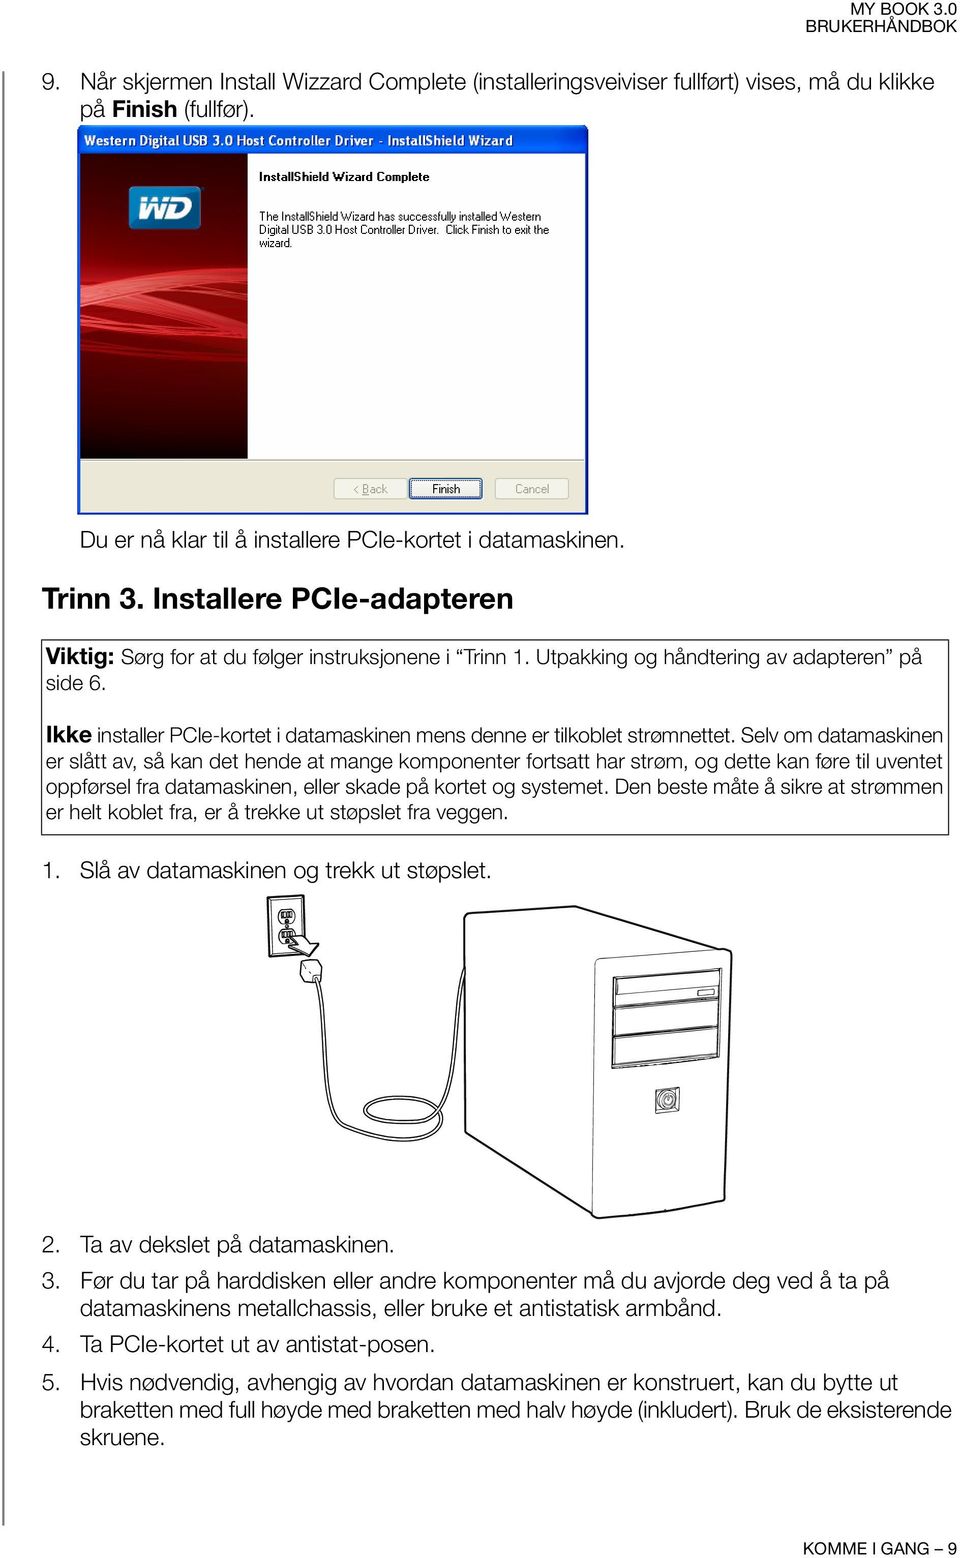 Ikke installer PCIe-kortet i datamaskinen mens denne er tilkoblet strømnettet.